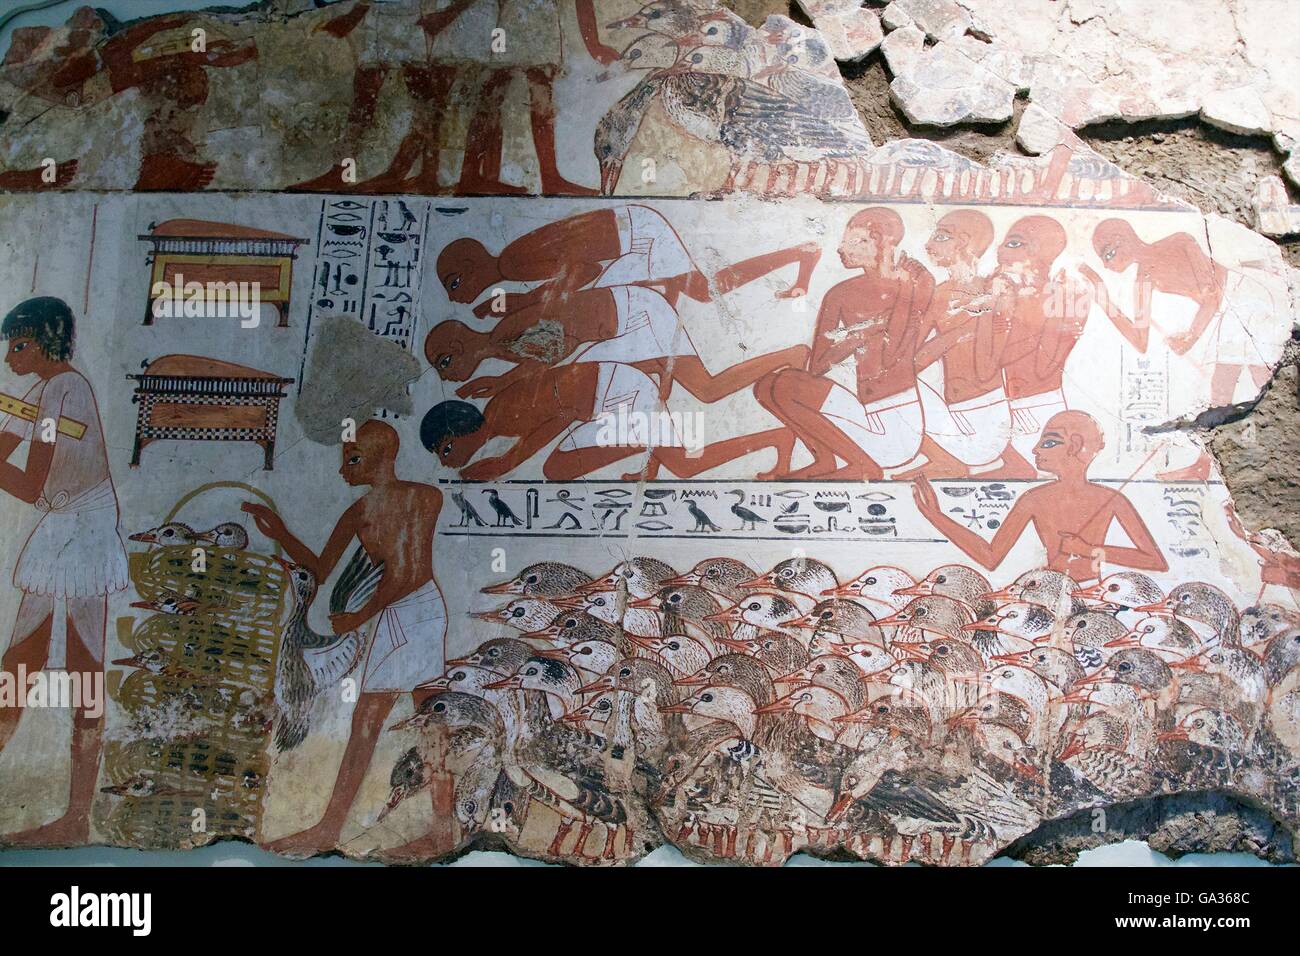 Visualización Nebamun gansos y ganado, tumba-capilla decoración, British Museum, Londres, Reino Unido. Foto de stock